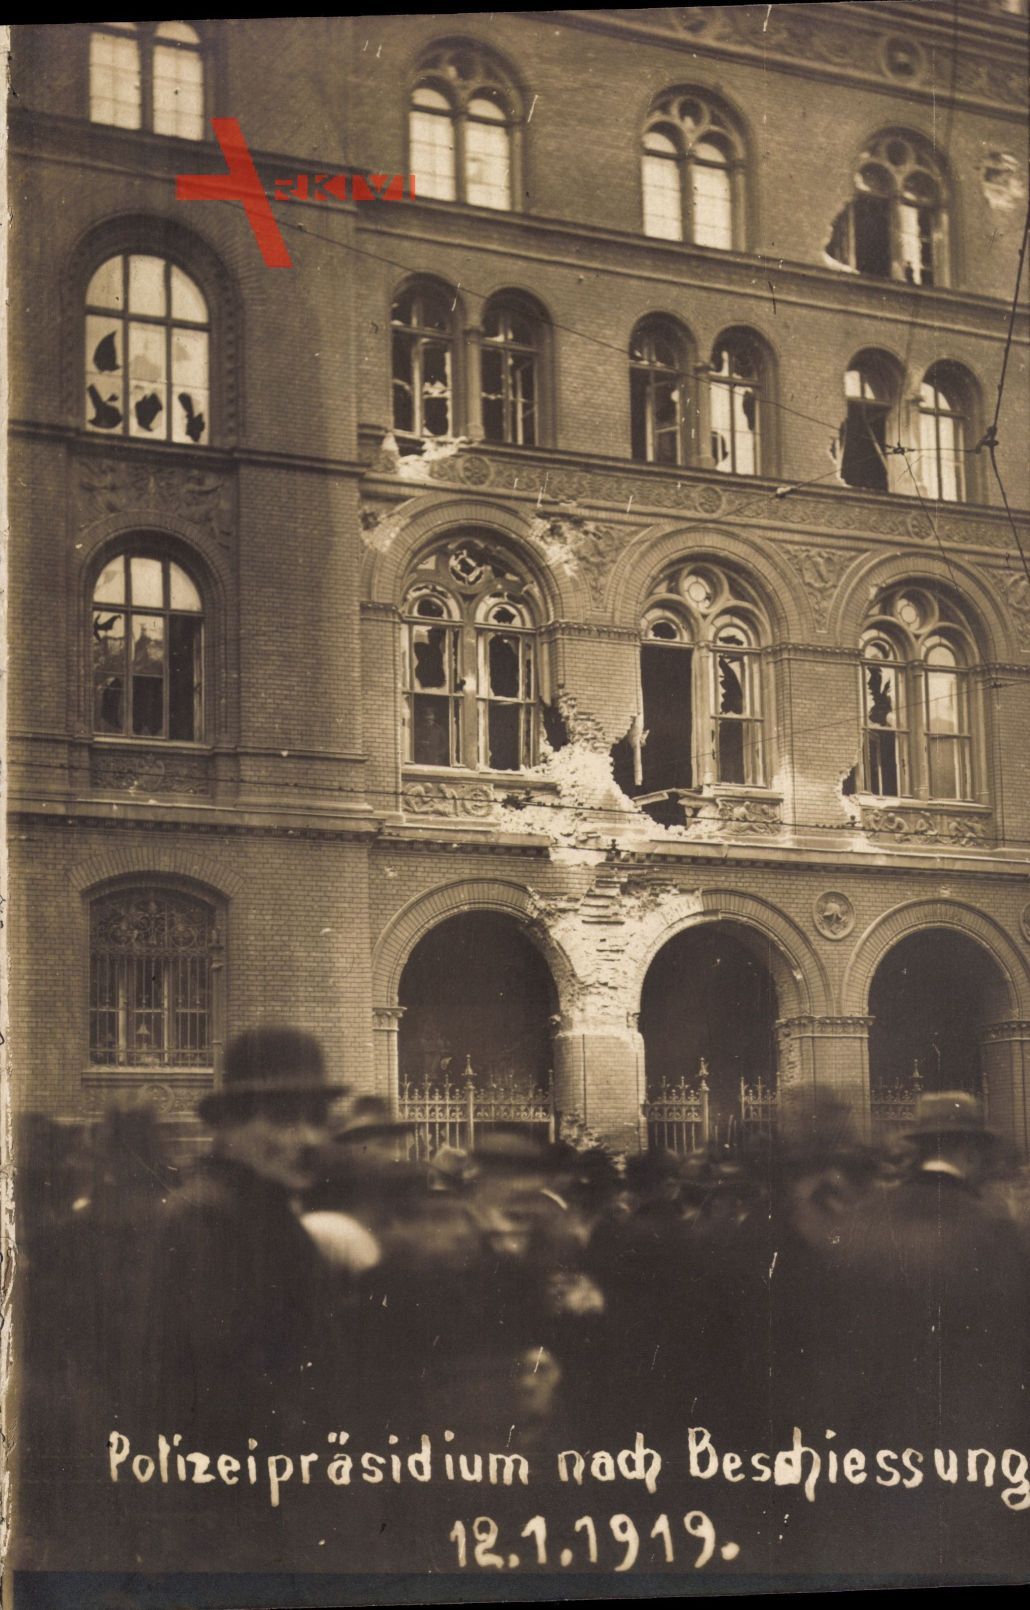 Berlin Mitte, Polizeipräsidium nach Beschiessung 1919, Spartakusaufstand